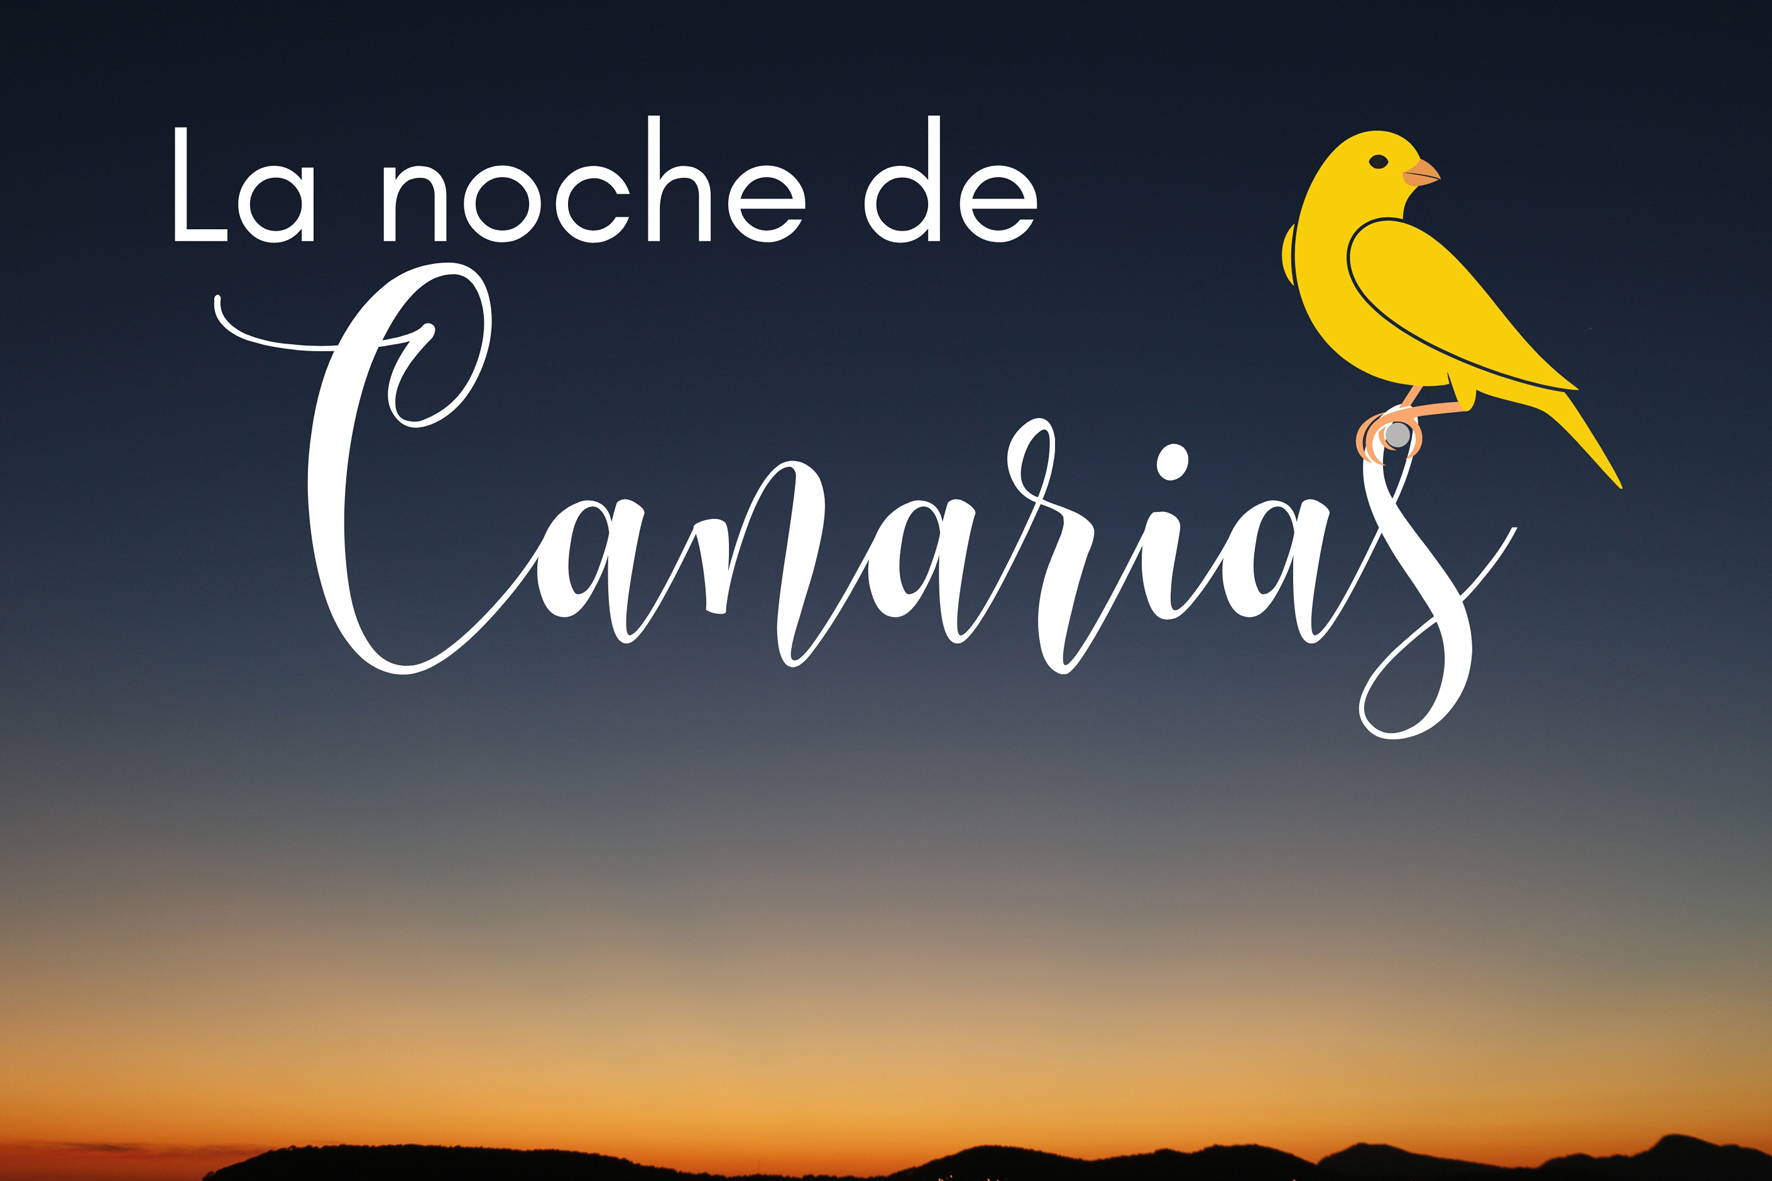 La asociación cultural Amador celebra “La noche de Canarias”